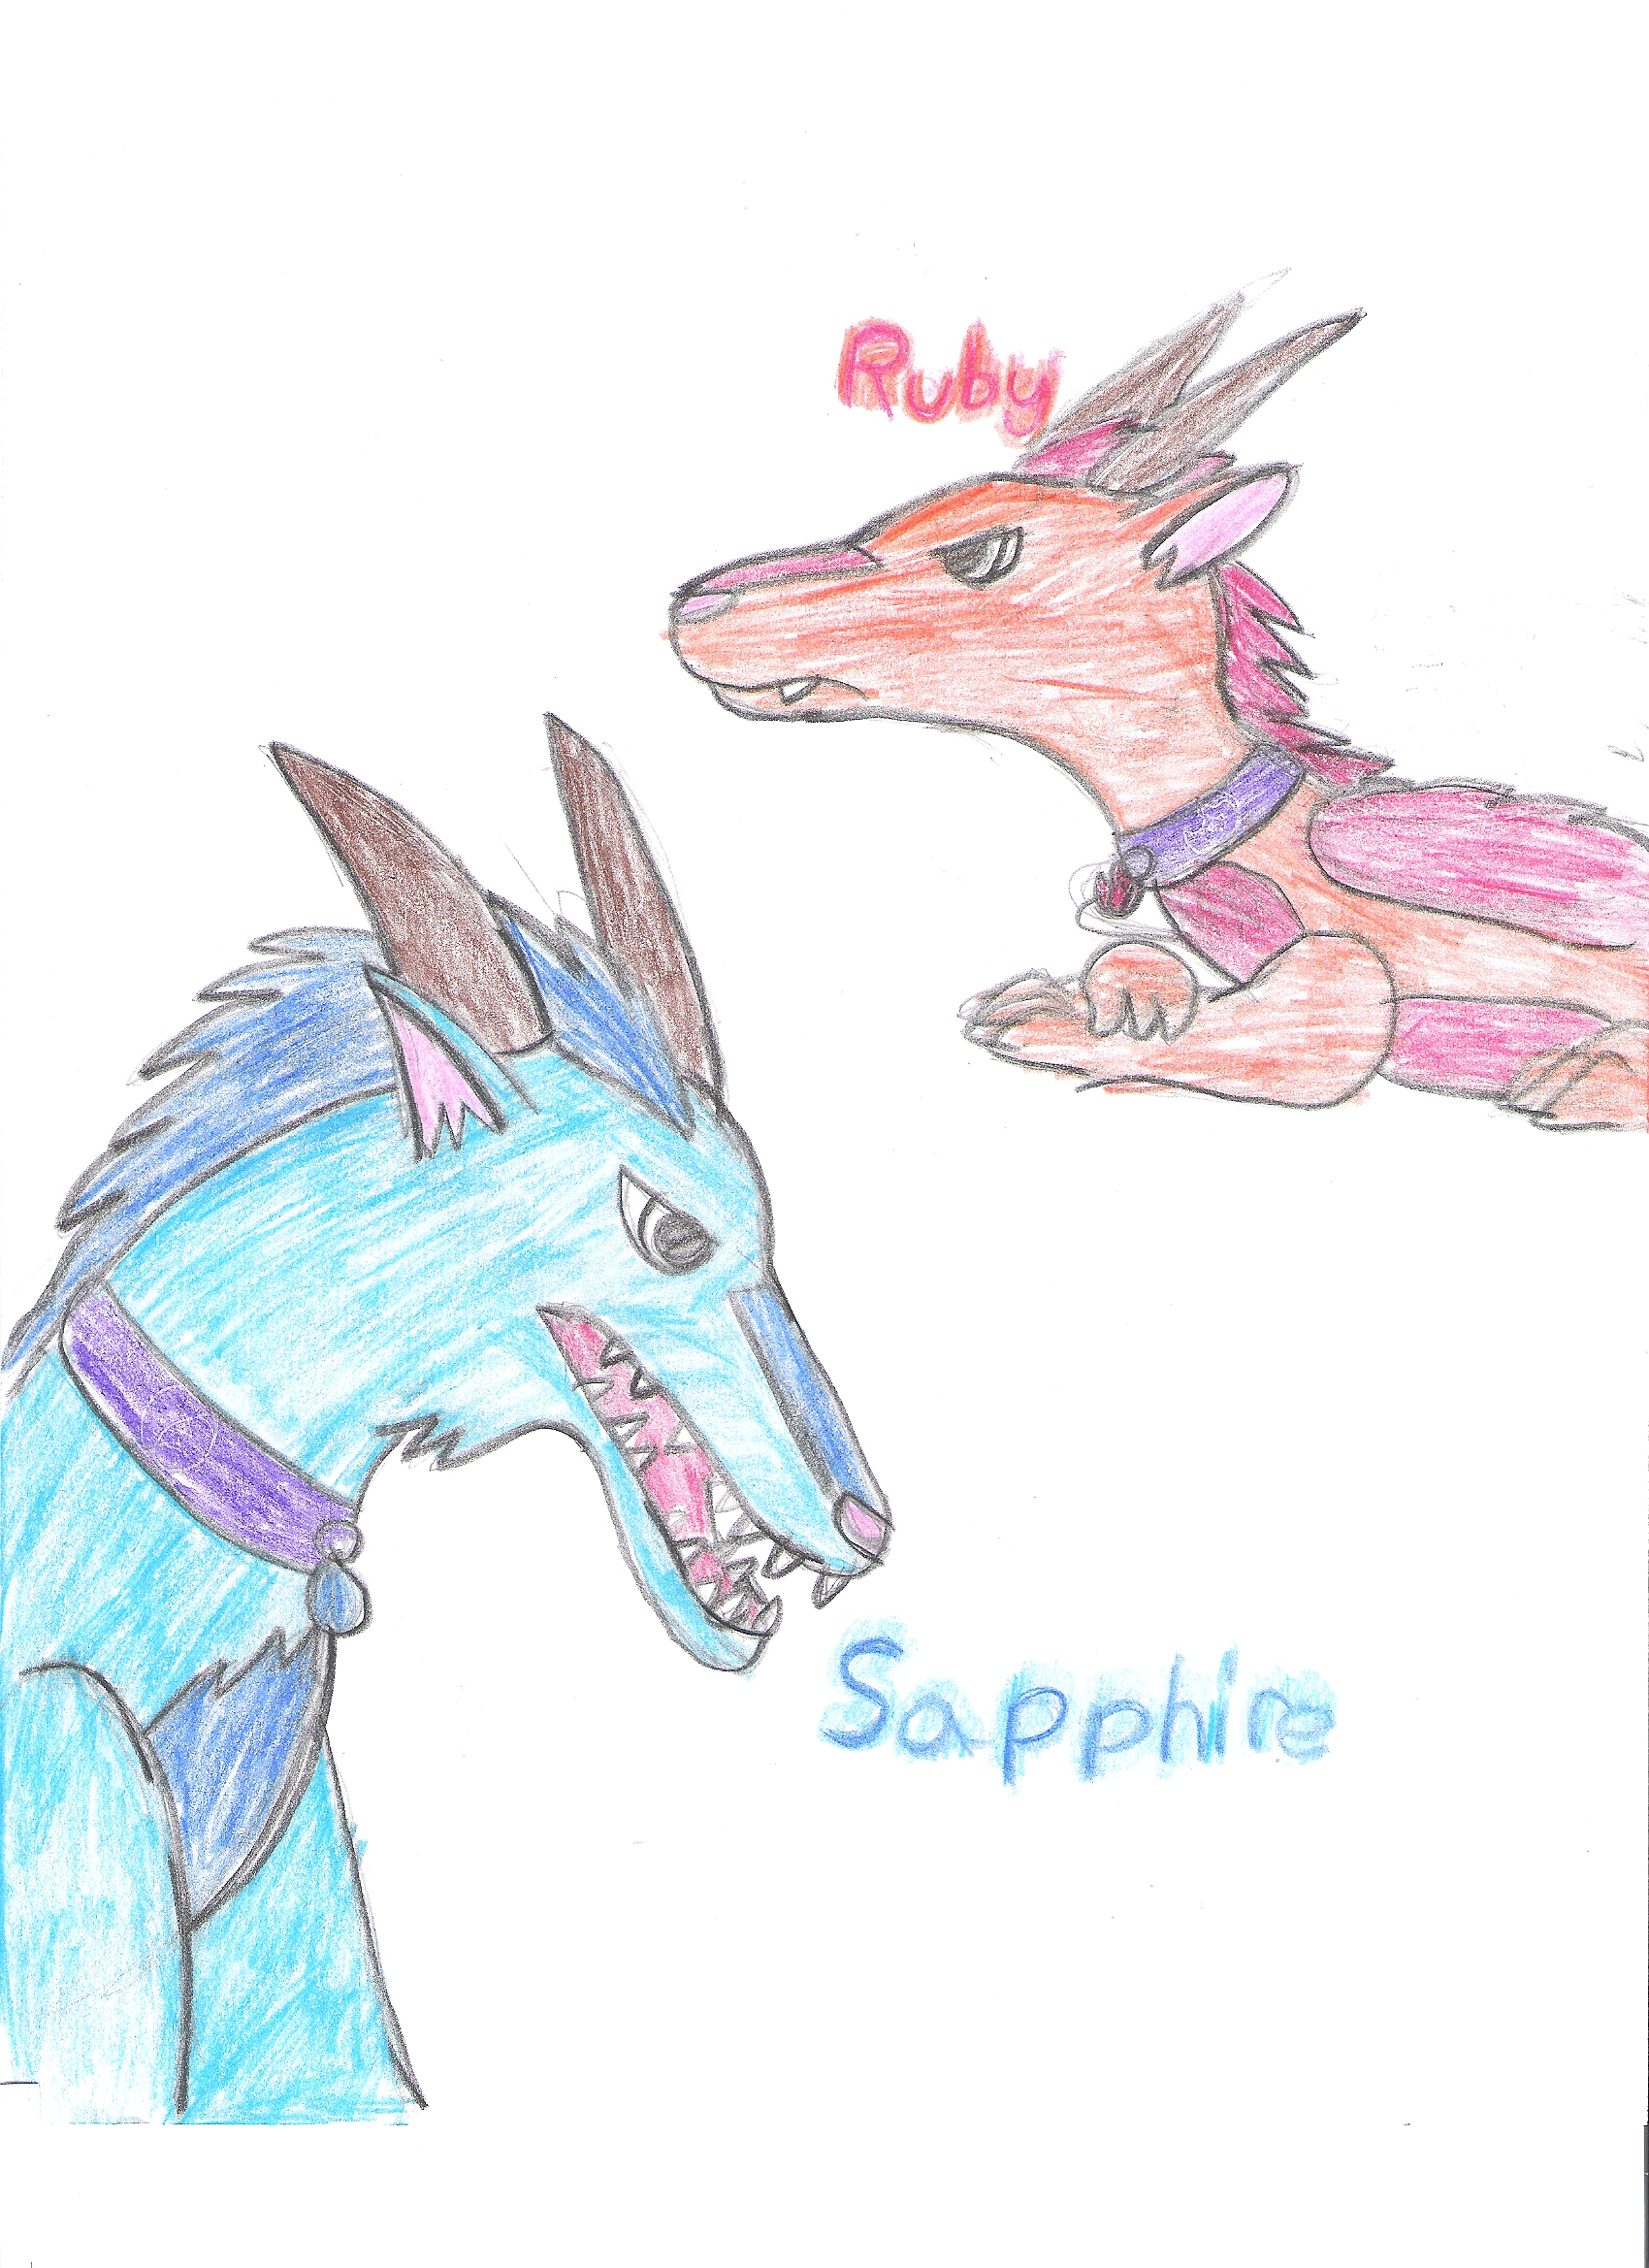 Dragon siblings by Arue